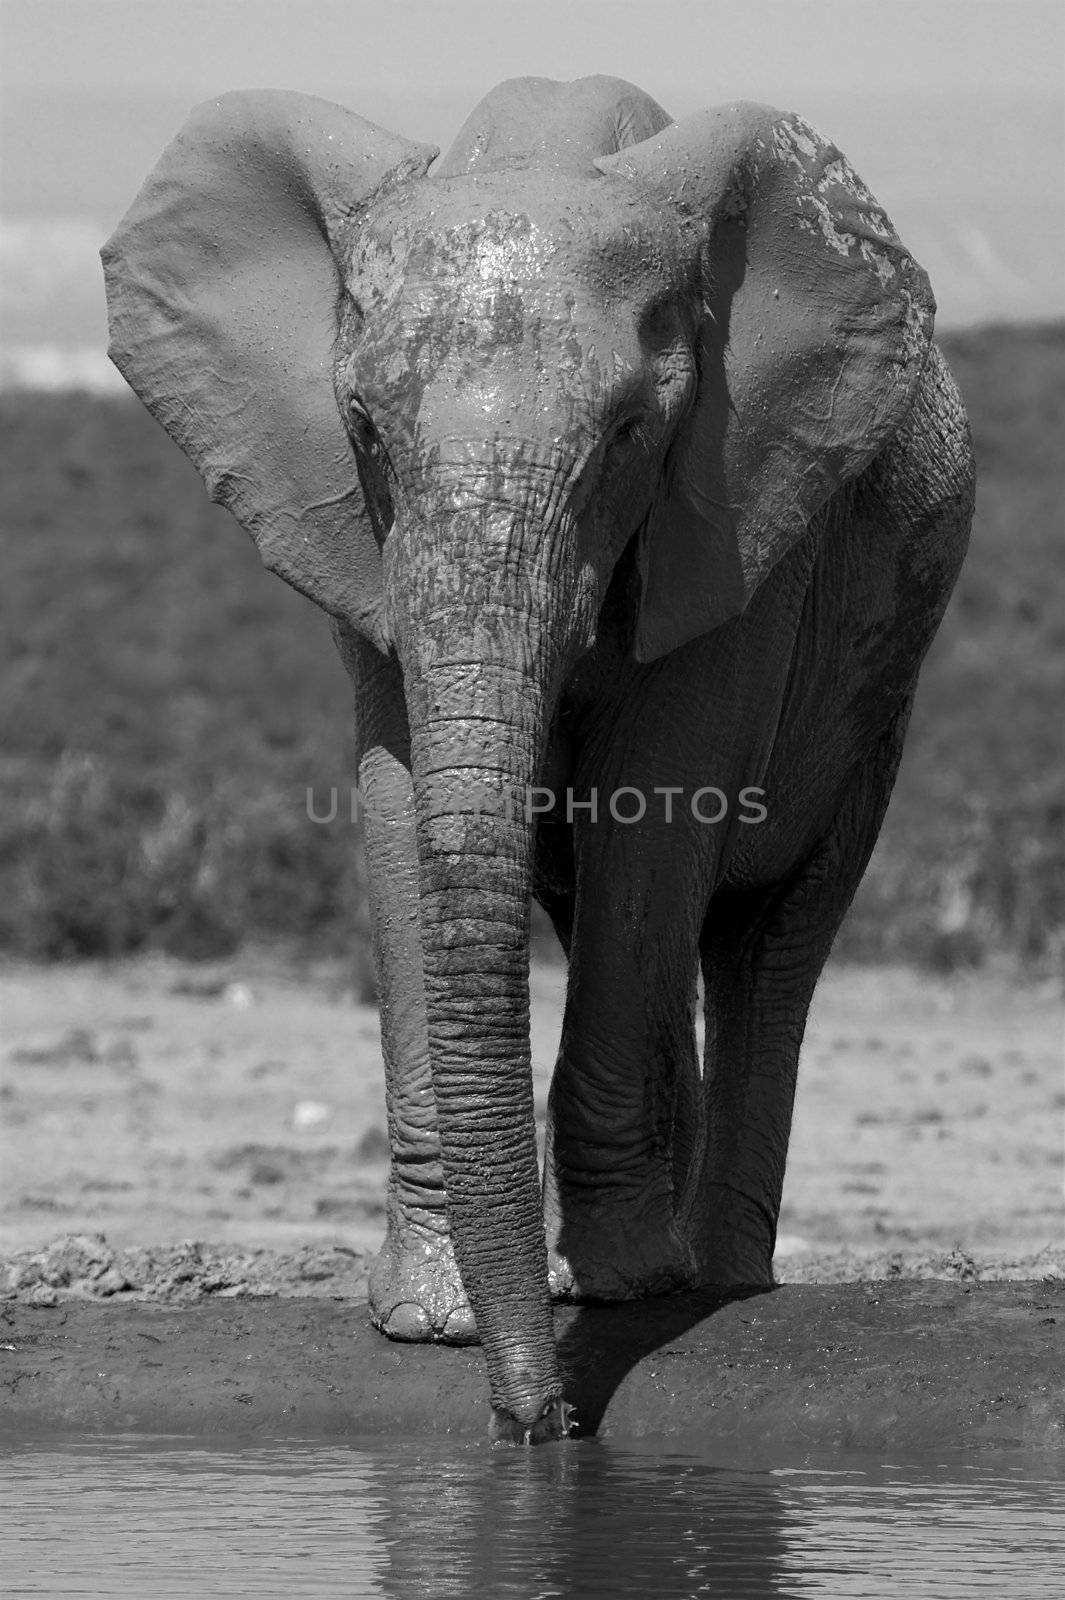 Muddy Elephant by nightowlza